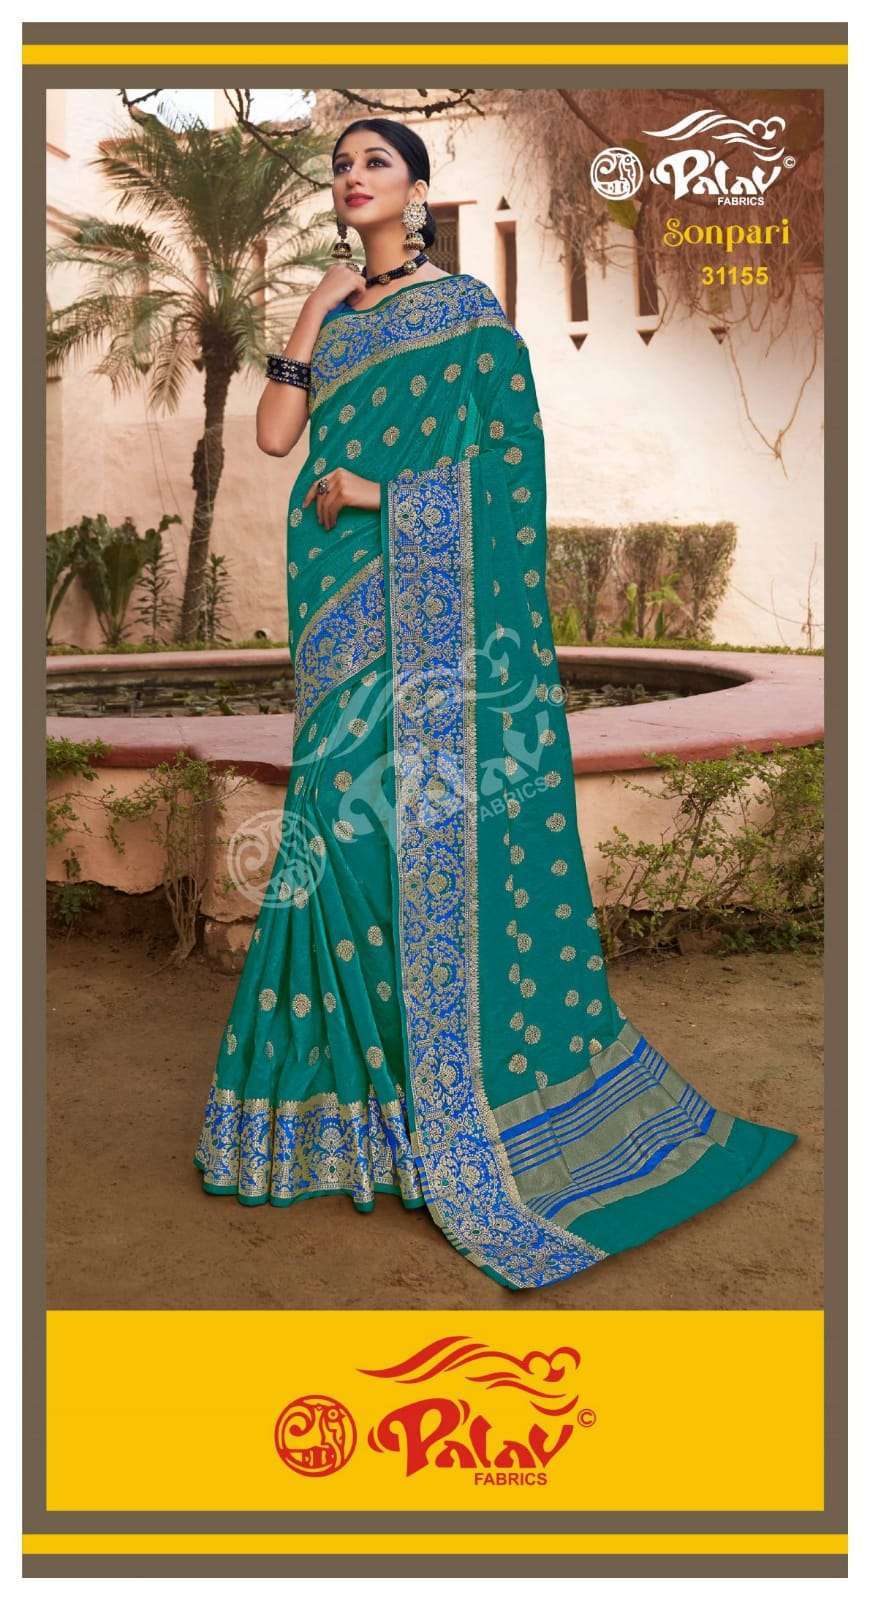 Palav Fabrics Sonpari Silk Traditional Sarees Collection 04